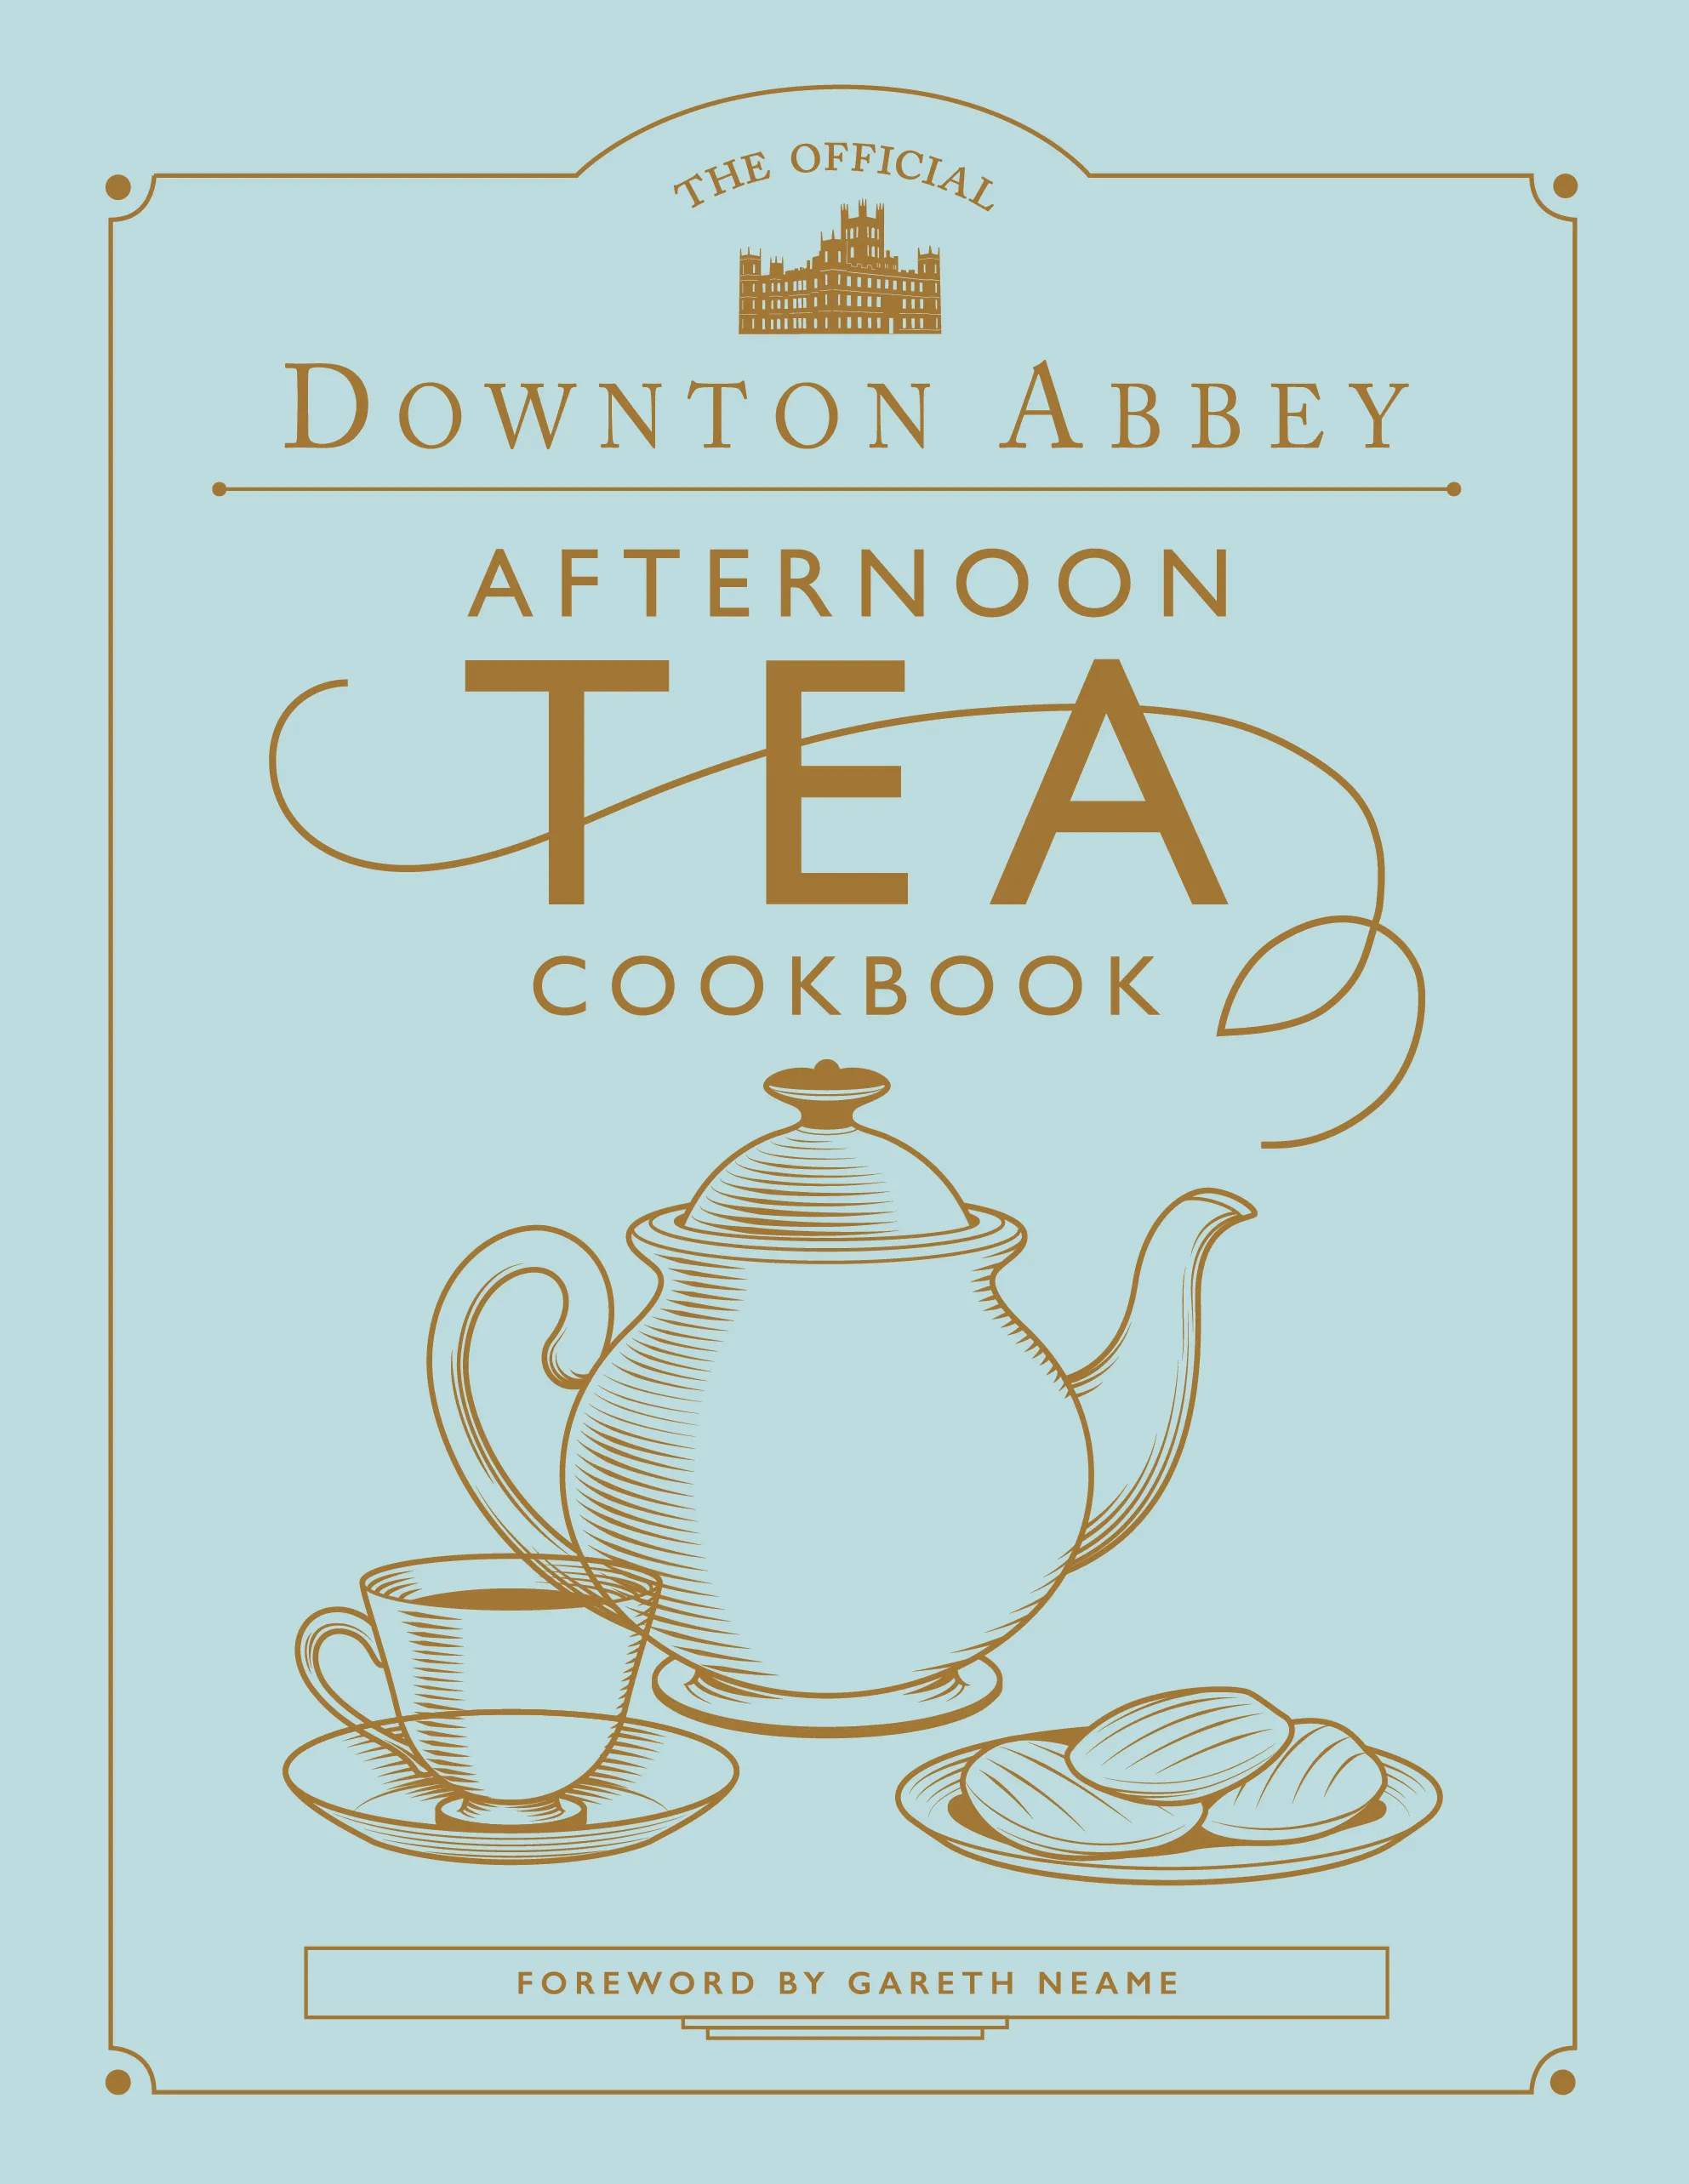 Downton Abbey Afternoon Tea kogebøger